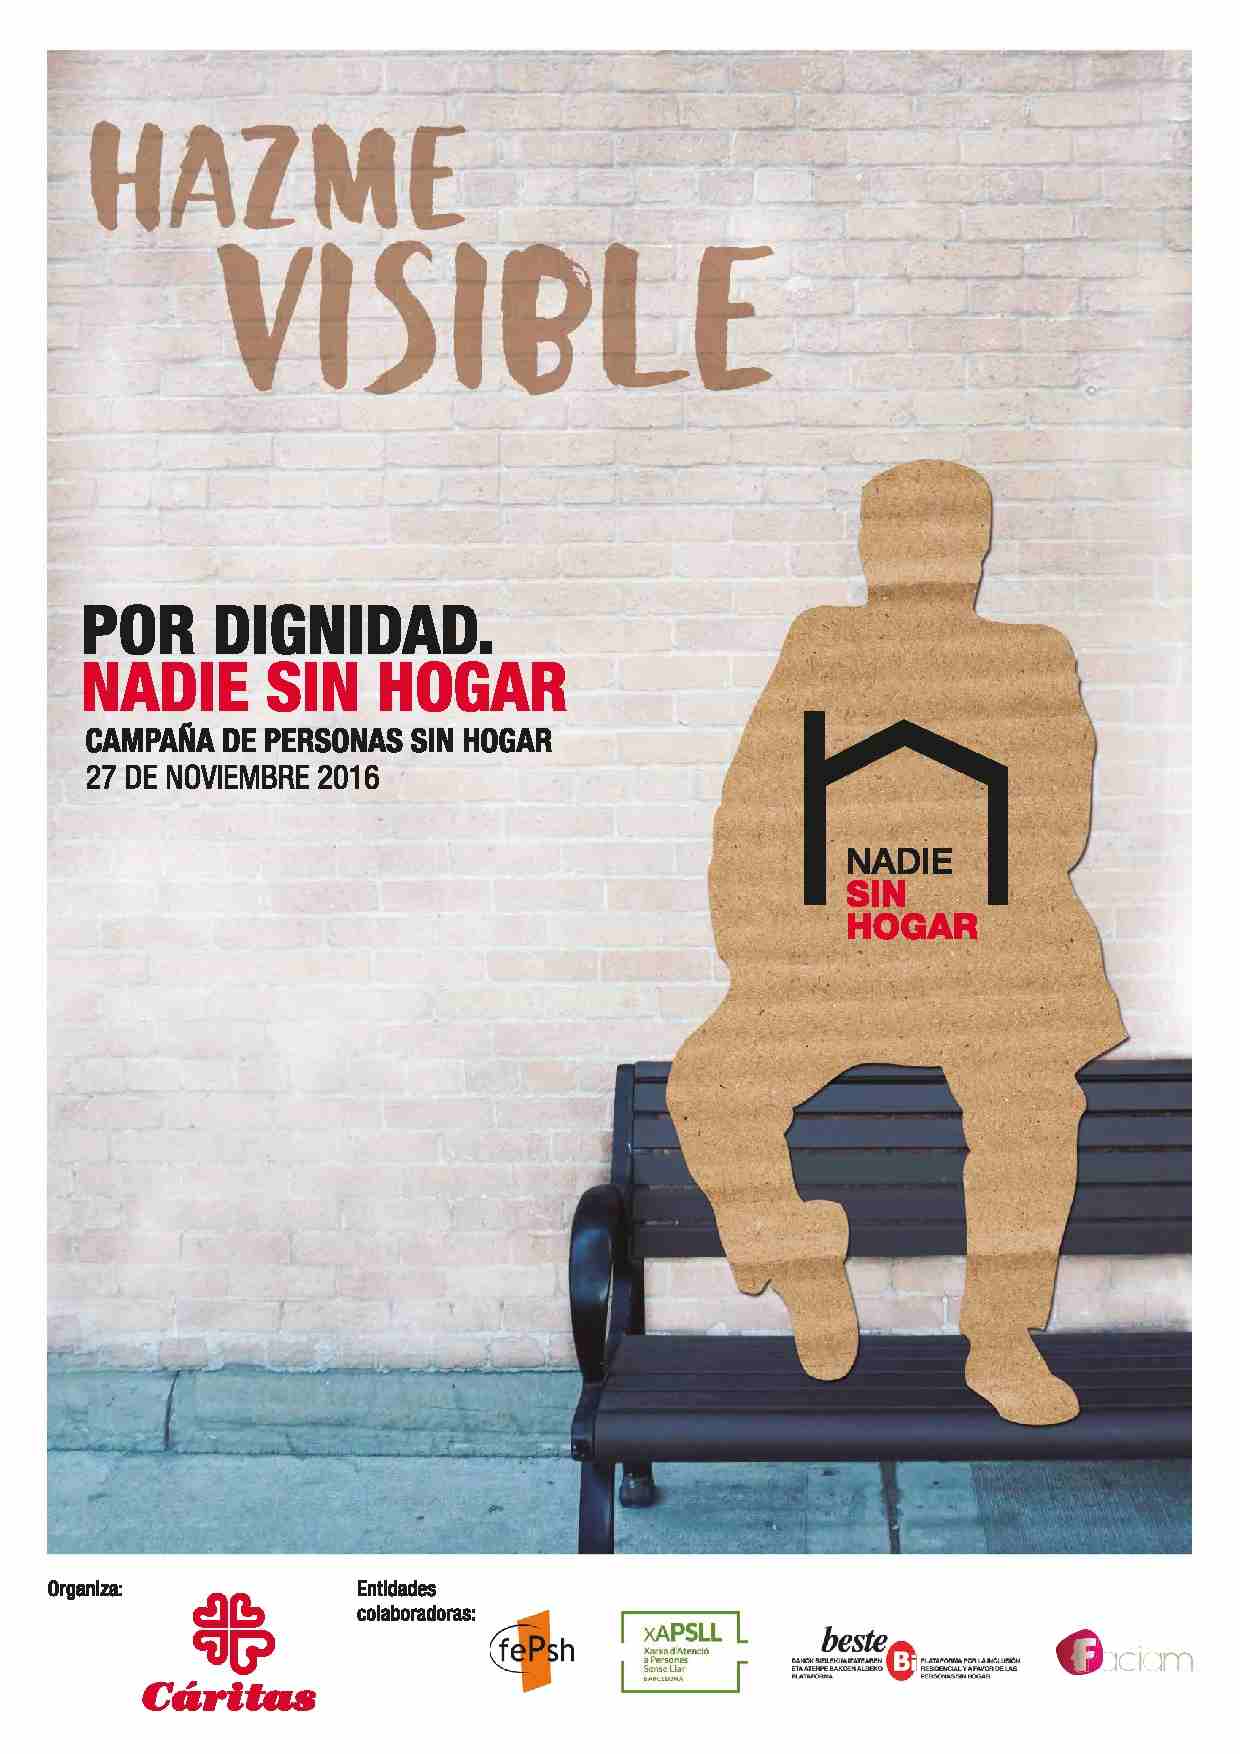 27 de noviembre, Día de las Personas Sin Hogar: Las entidades que trabajan con las personas sin hogar reclaman dignidad y derechos para quienes viven en la calle